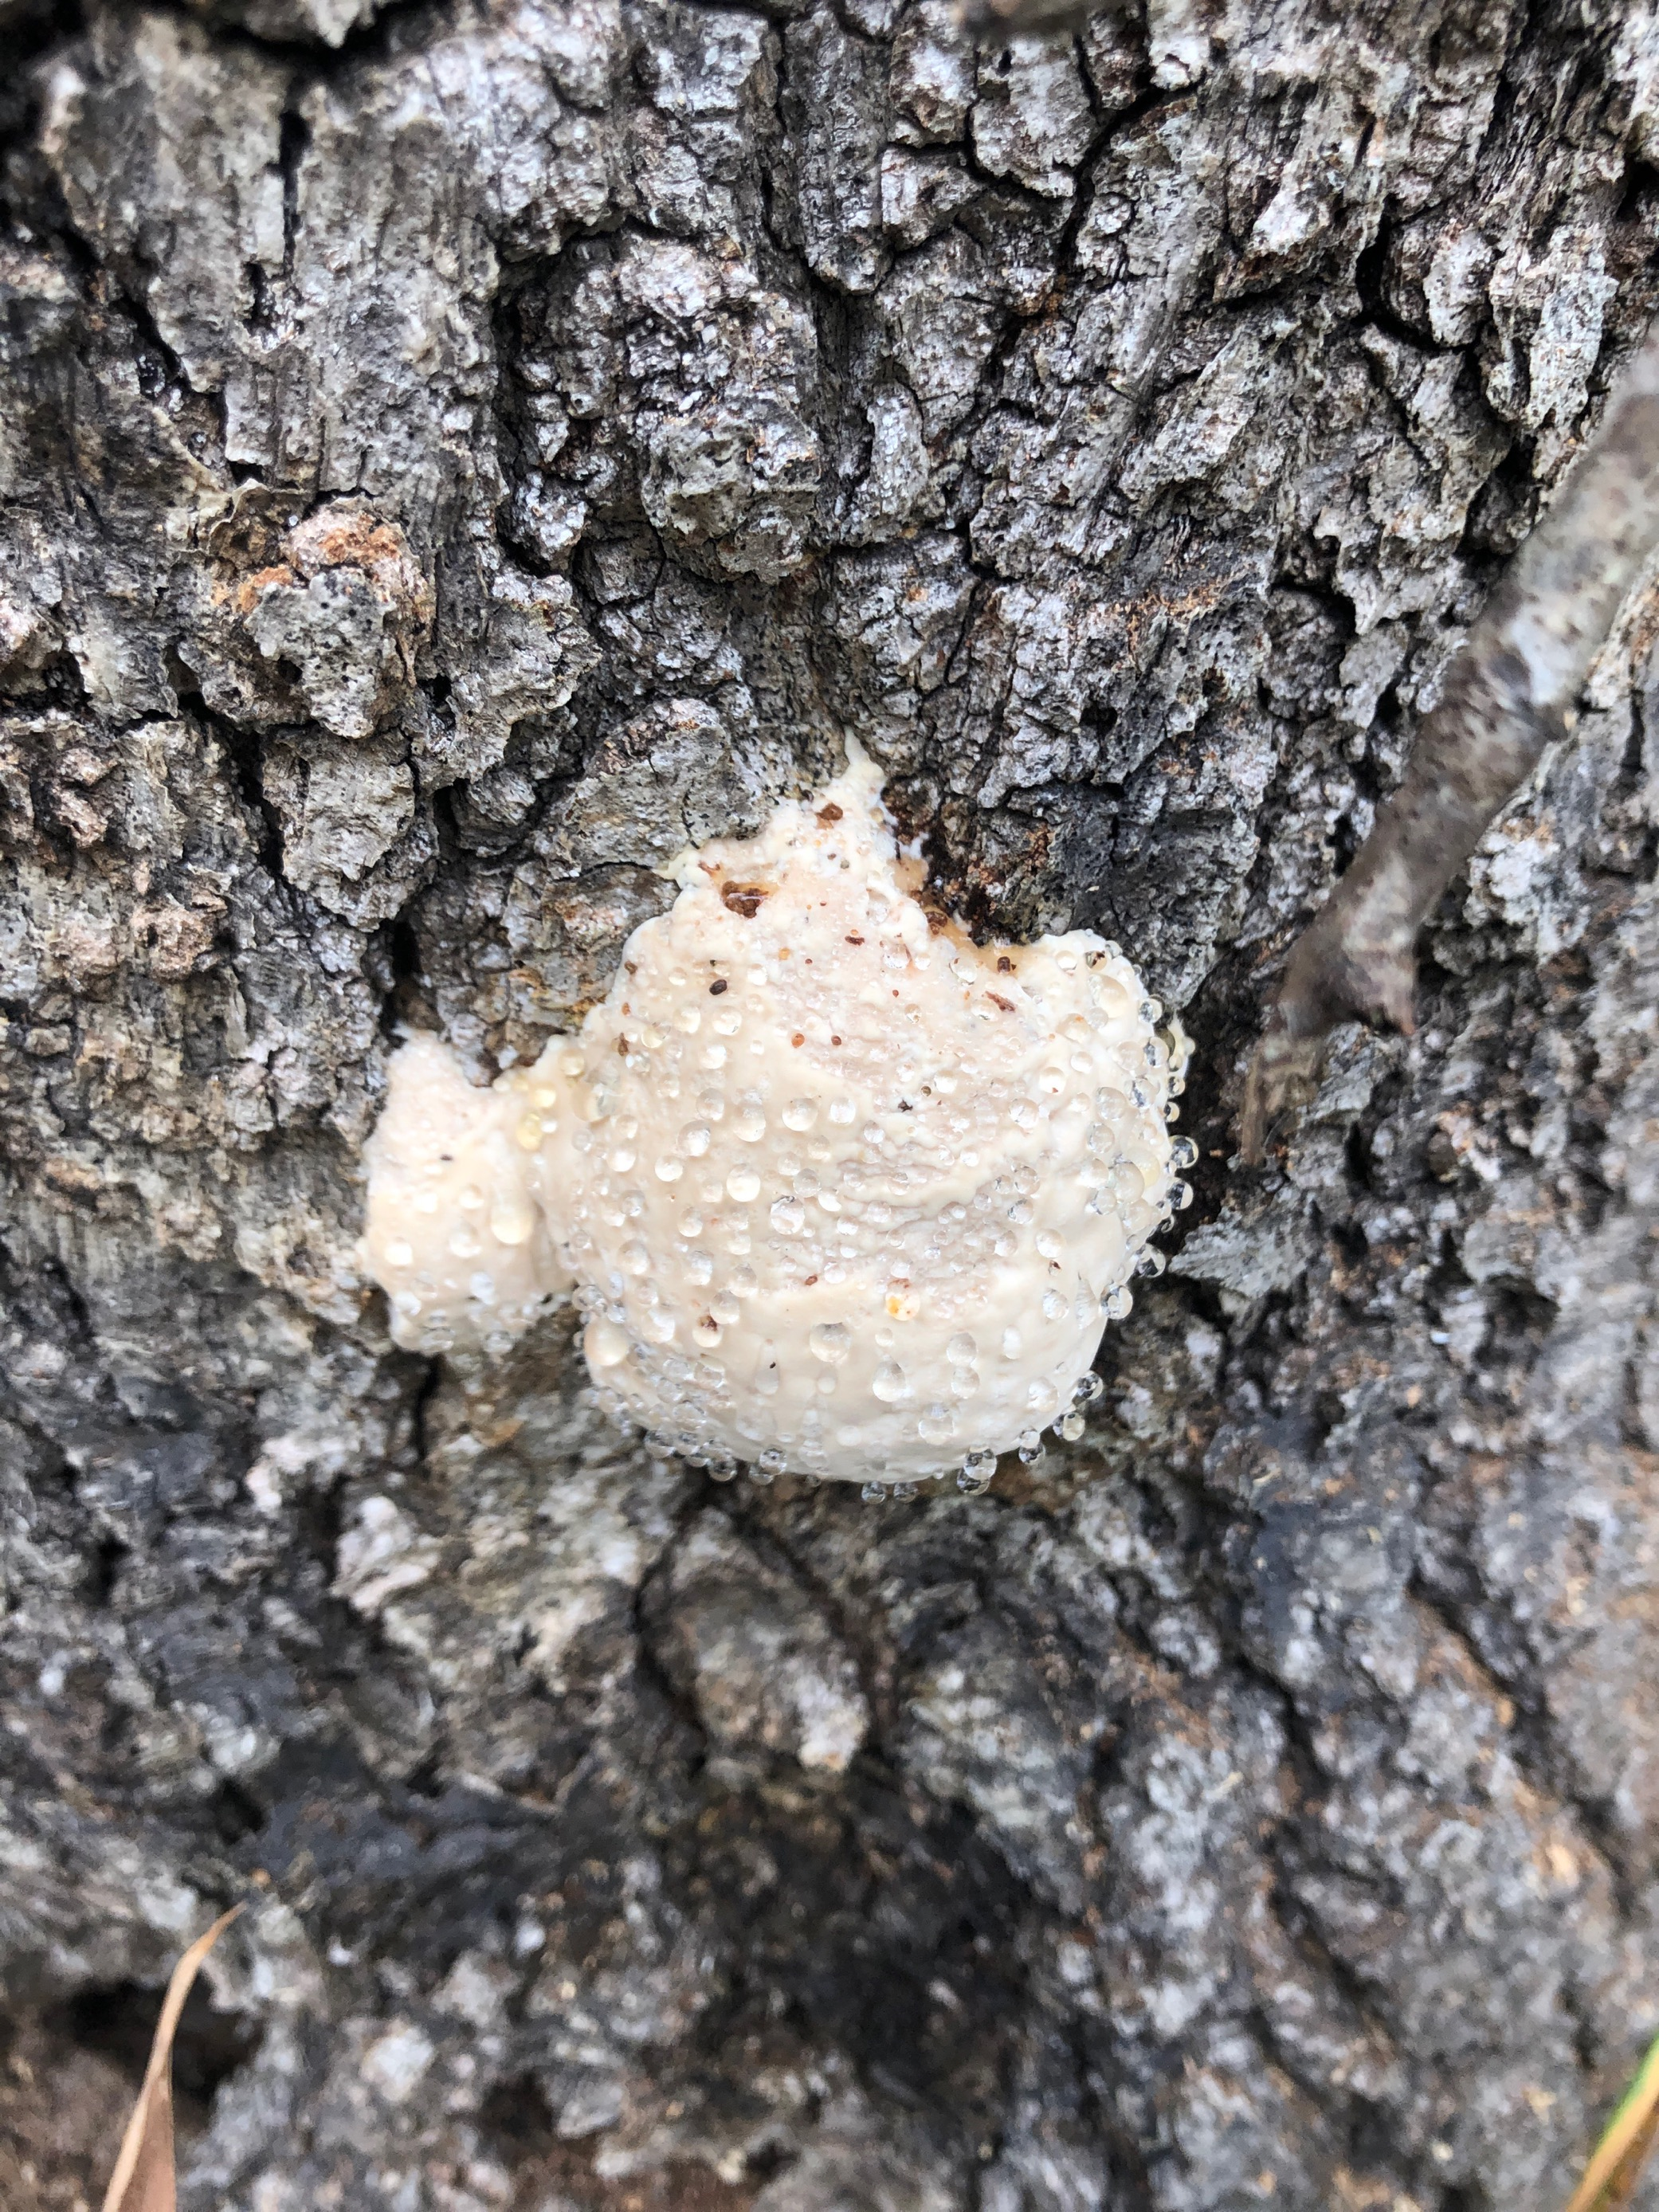 wet white fungus on bark.